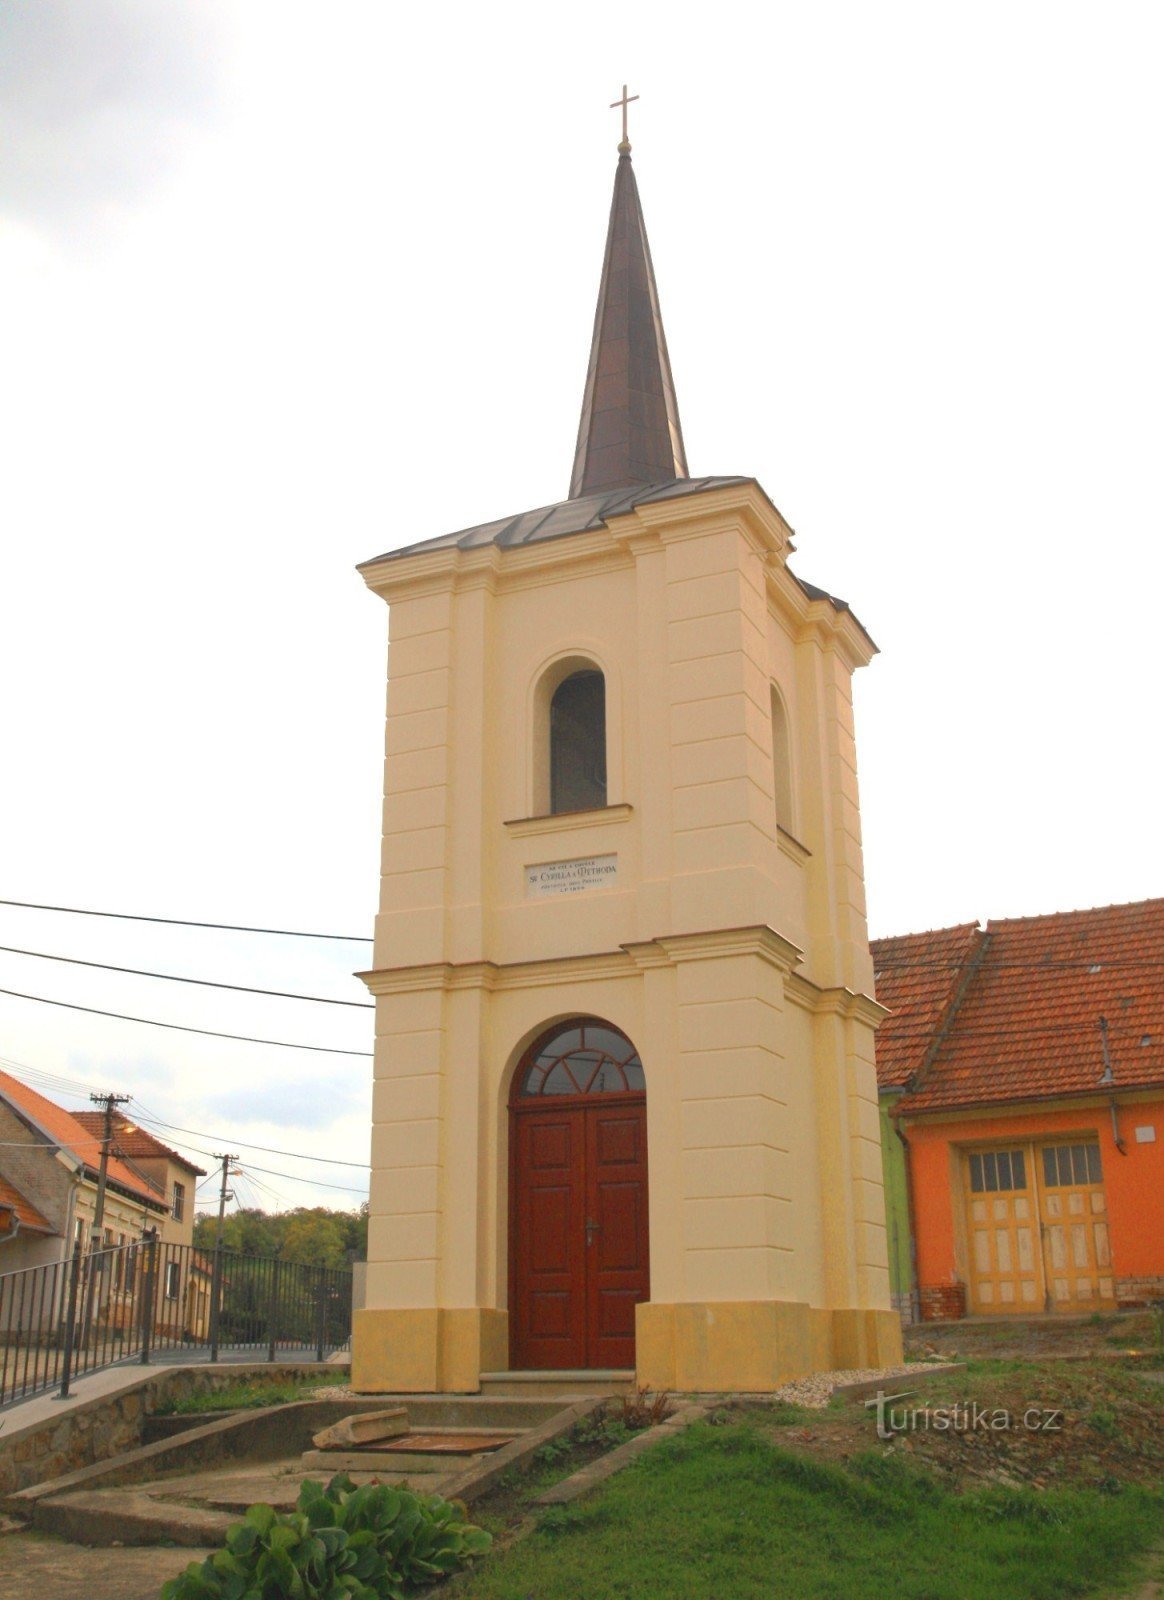 Prštice - bell tower